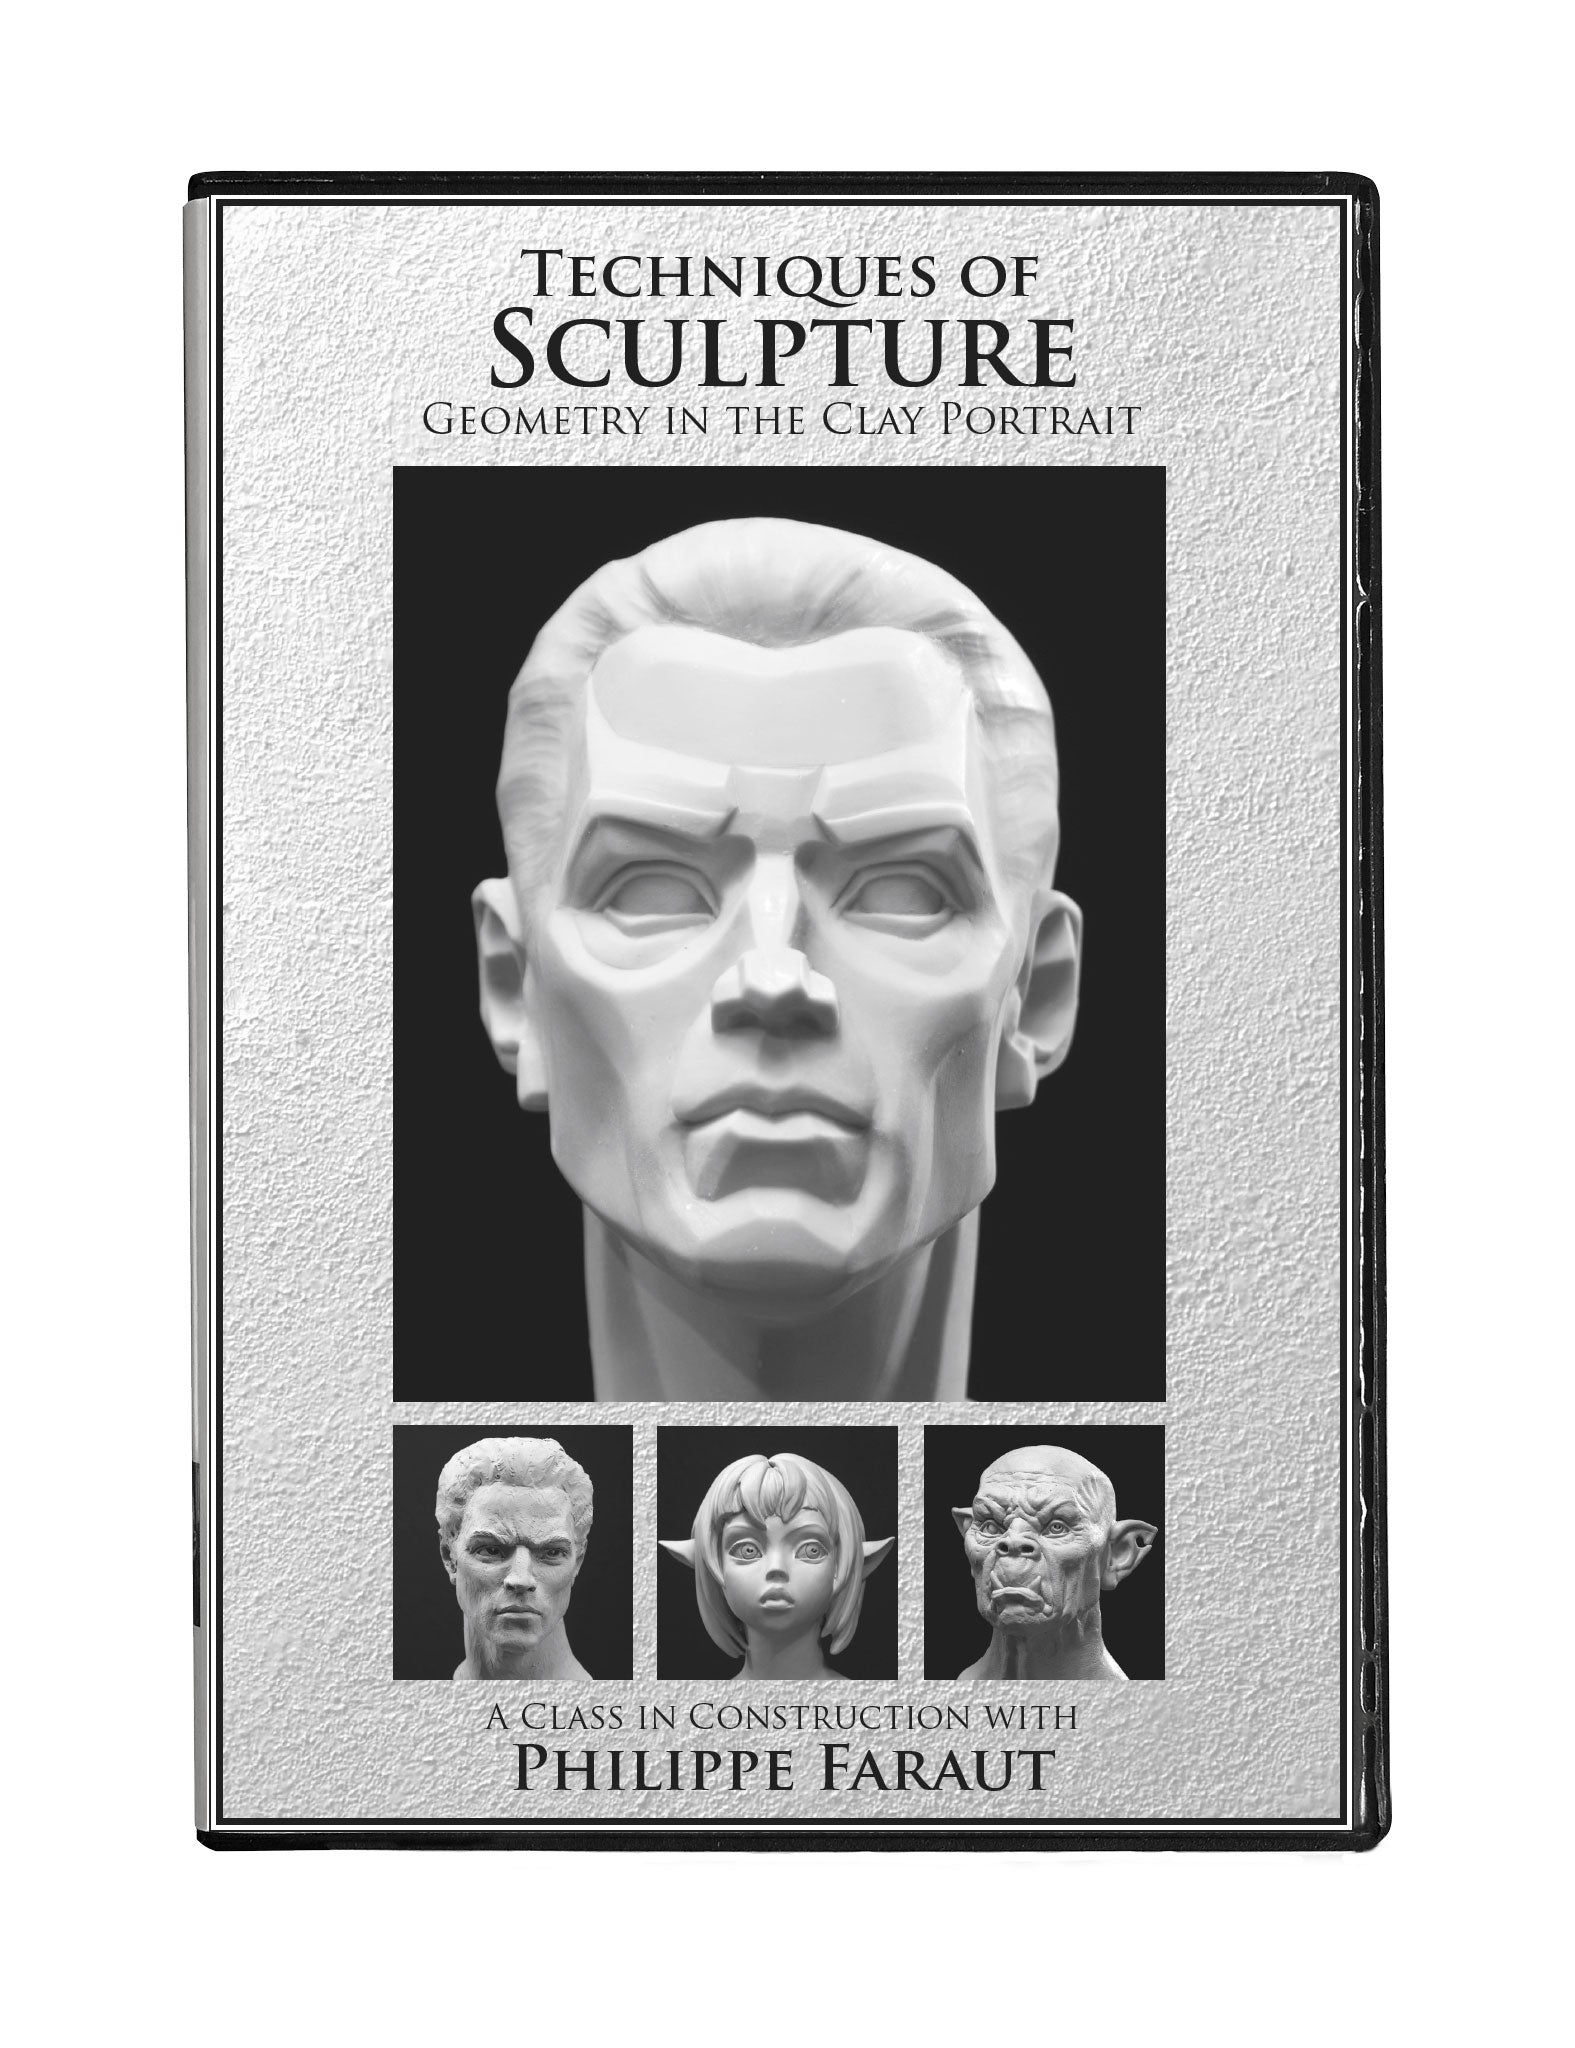 Portrait Sculpture Gallery - PCF Studios